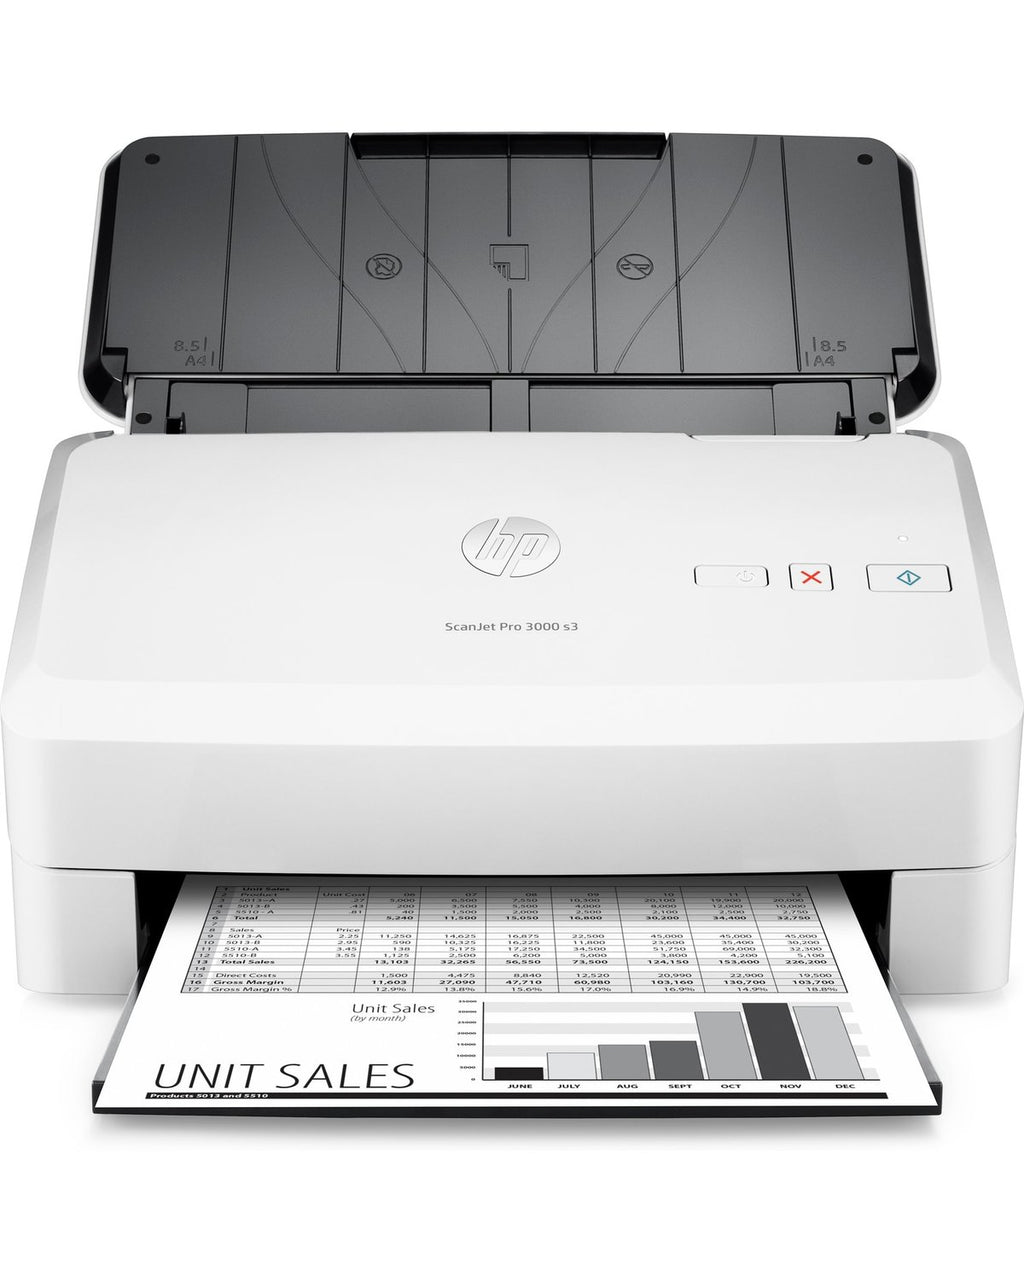 Used/refurbished HP Scanjet Pro 3000 Document Scanner